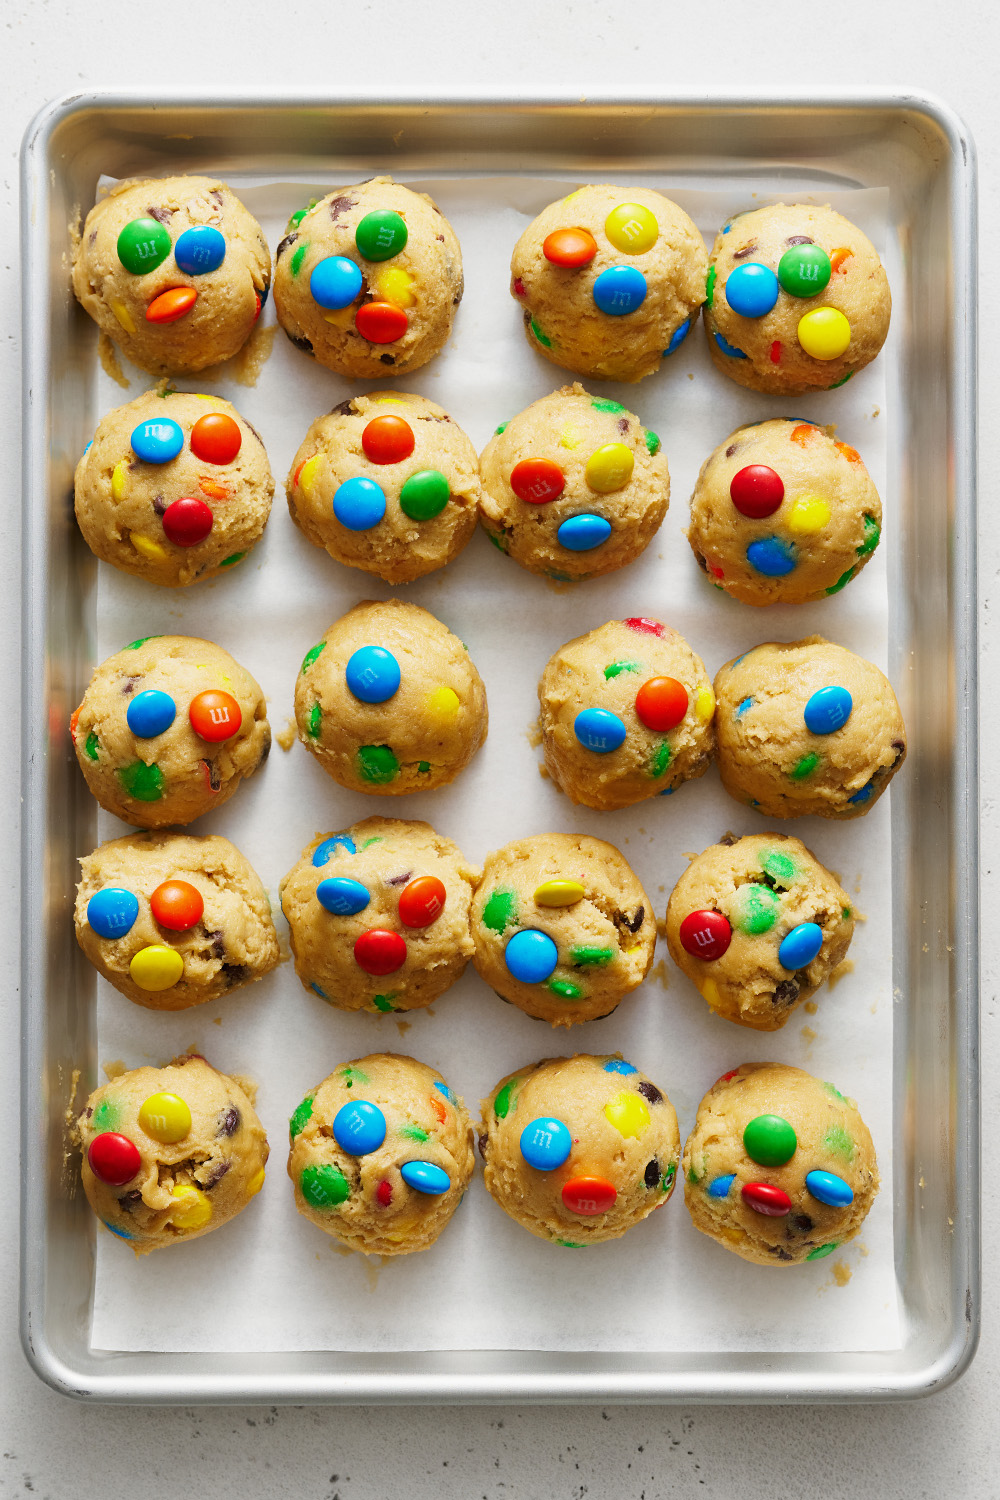 dough balls on a baking tray.